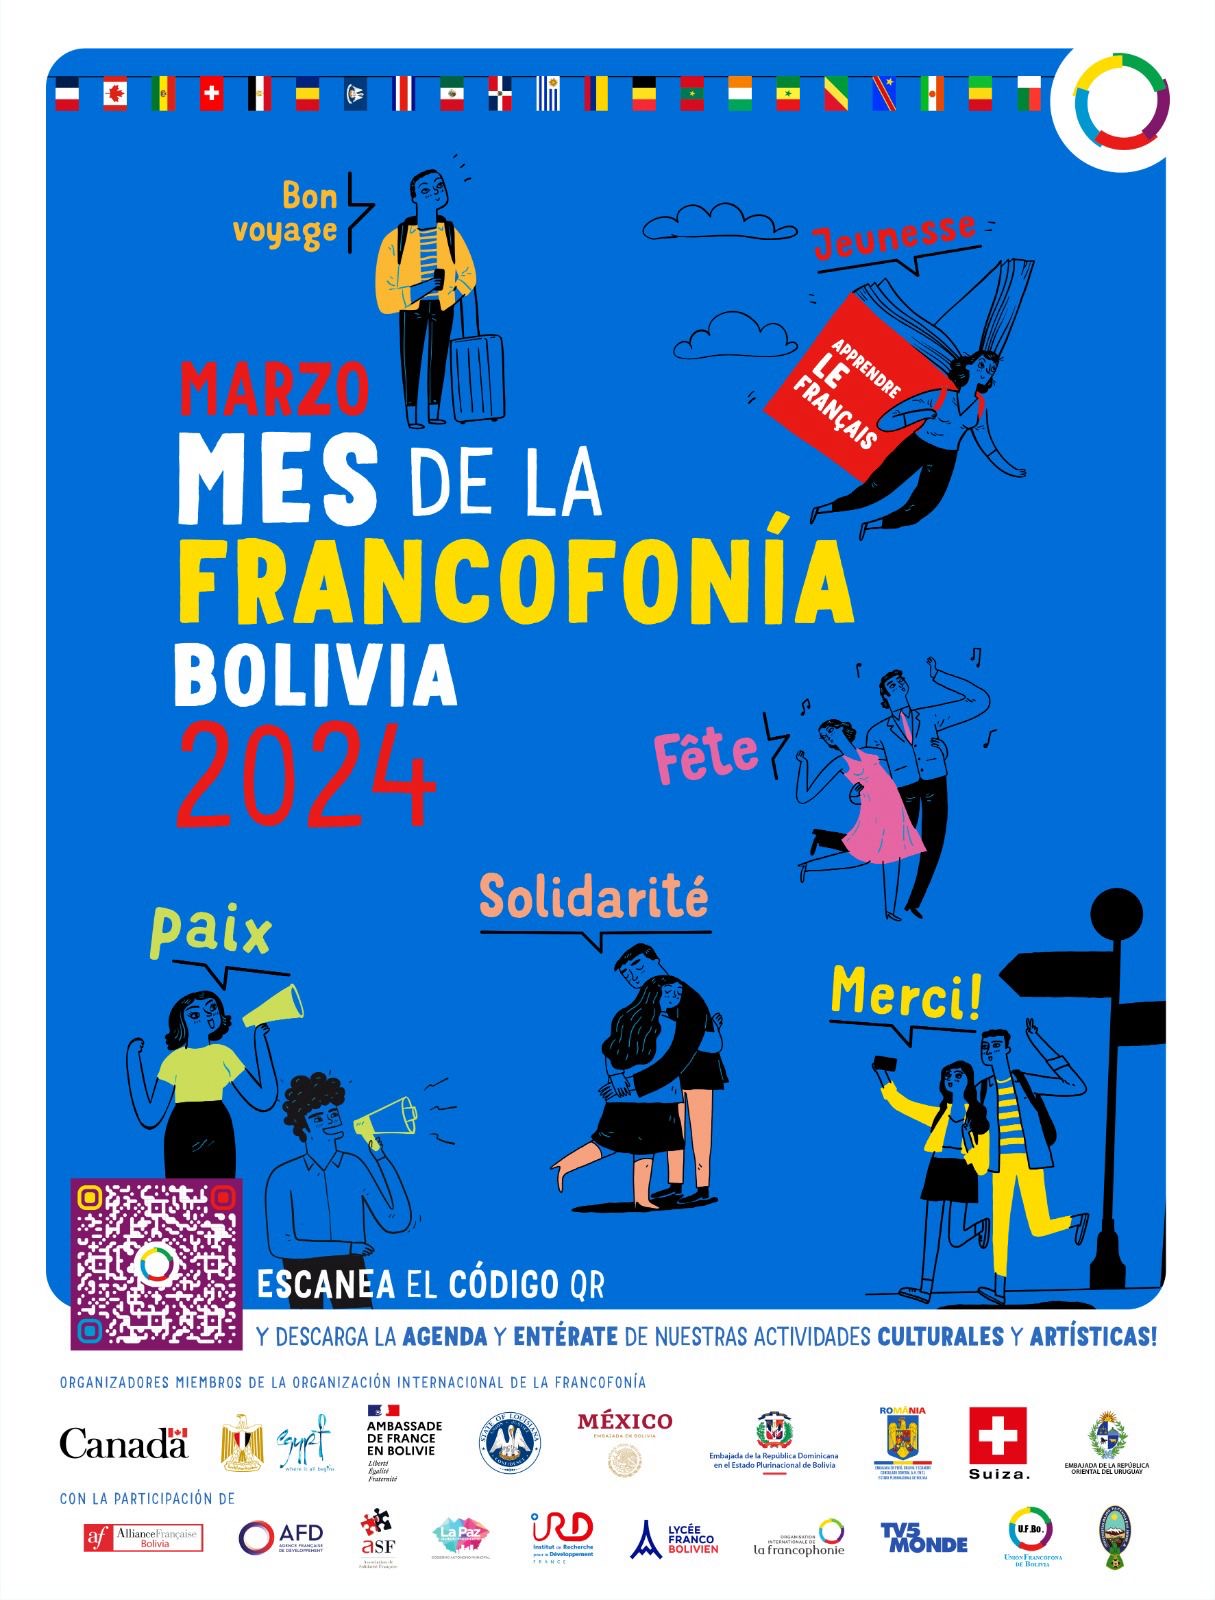 La conferencia de apertura del mes de la Francofonía 2024 tuvo lugar el jueves 29 de febrero en la Embajada de Suiza en Bolivia.